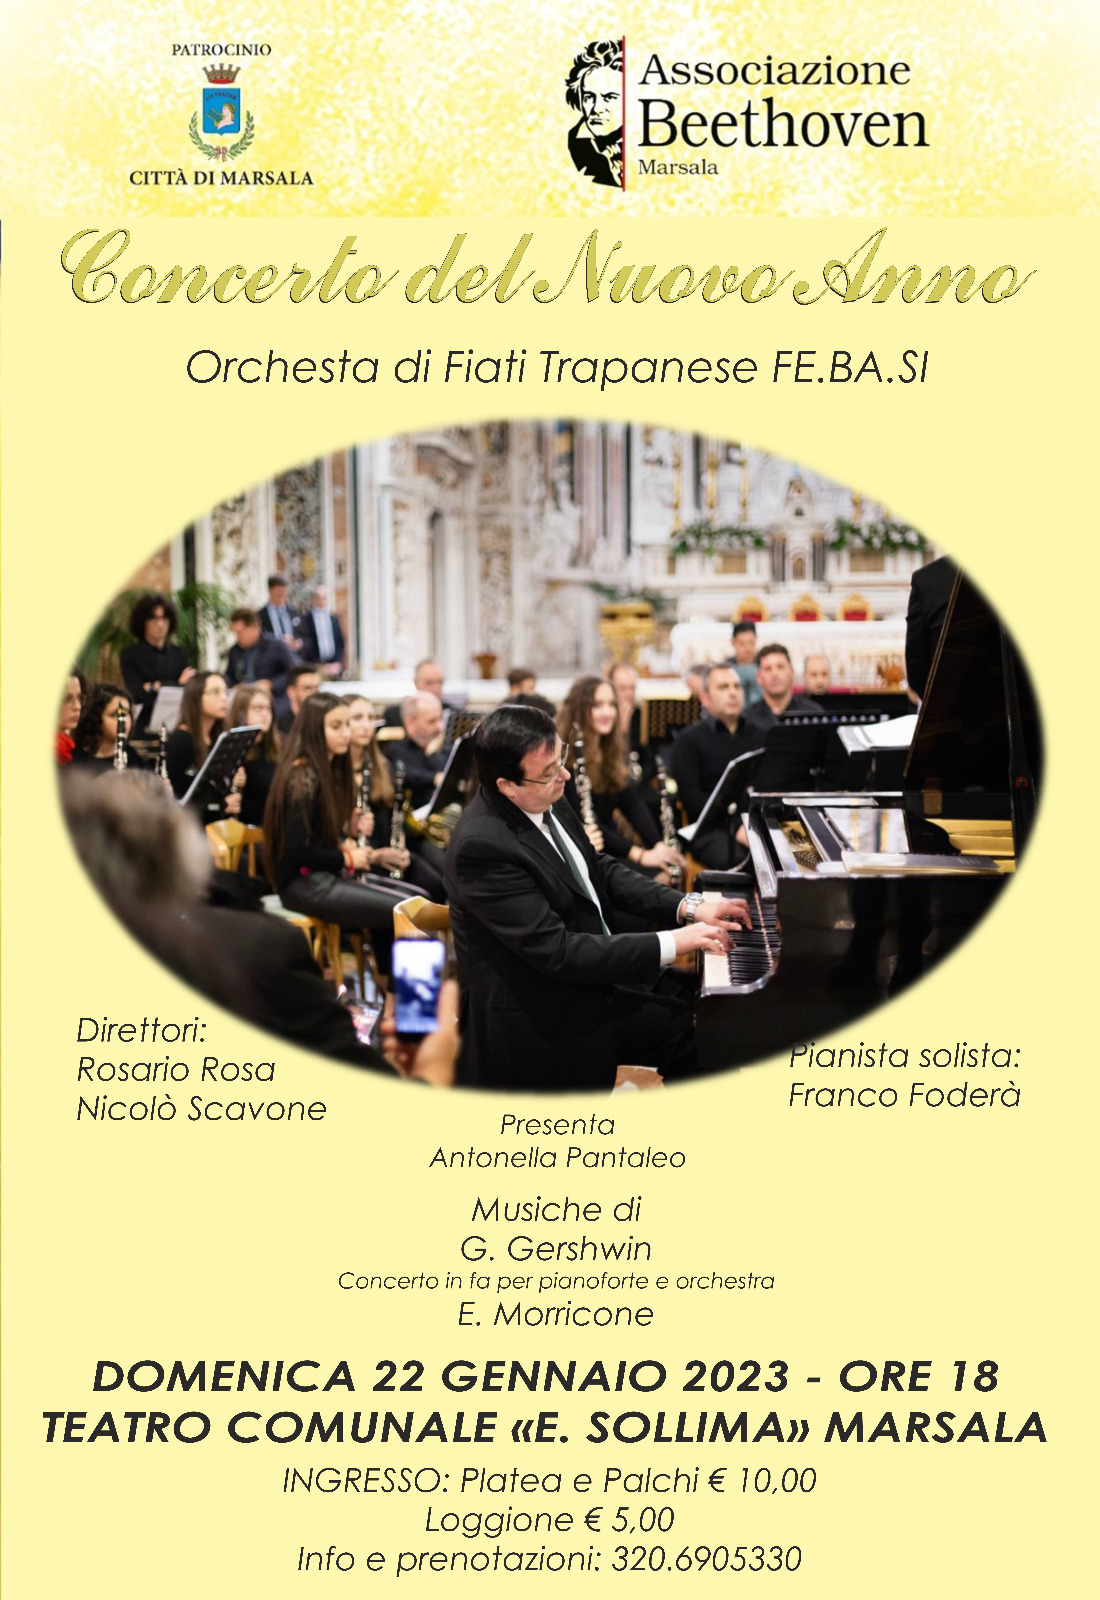 L’Orchestra di Fiati Trapanese in concerto al “Sollima” di Marsala